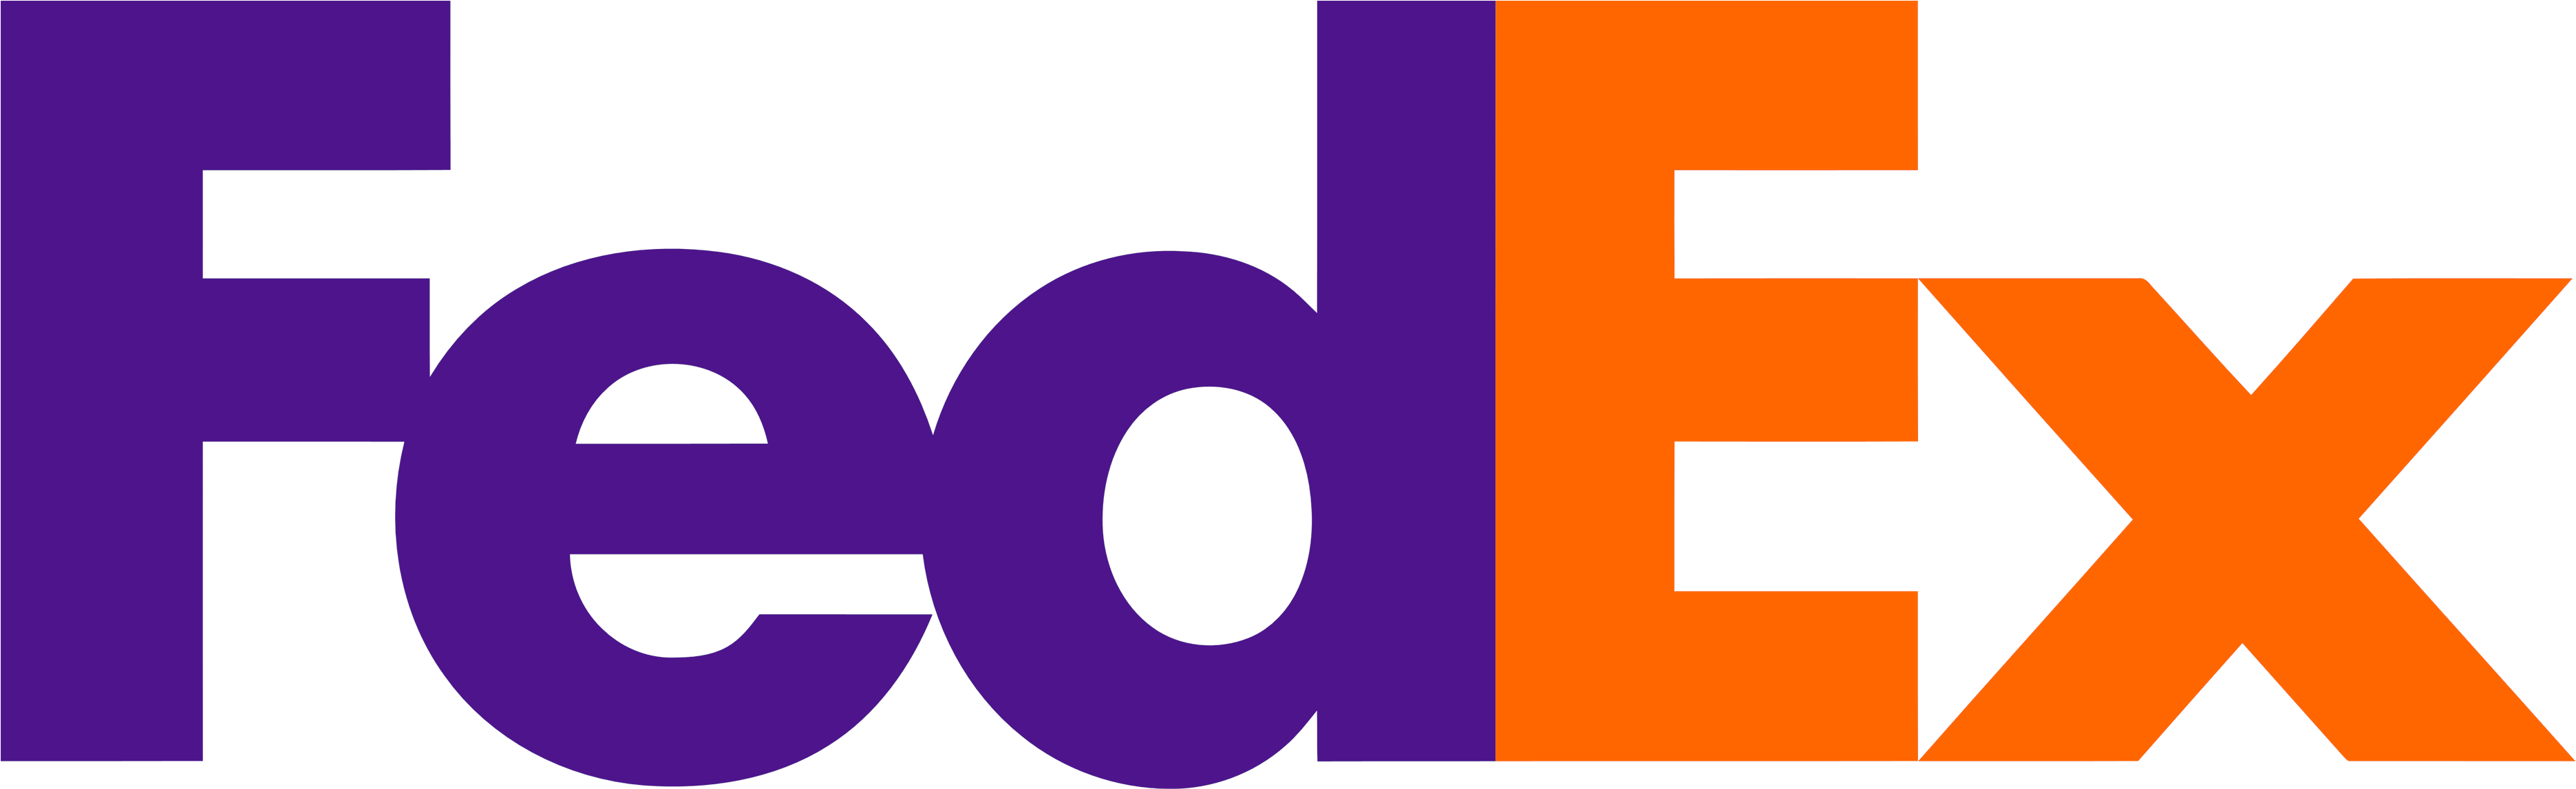 El Logotipo De Fedex Ha Sido Conocido Como Uno De Los - Font Based Logo Clipart (3840x2160), Png Download